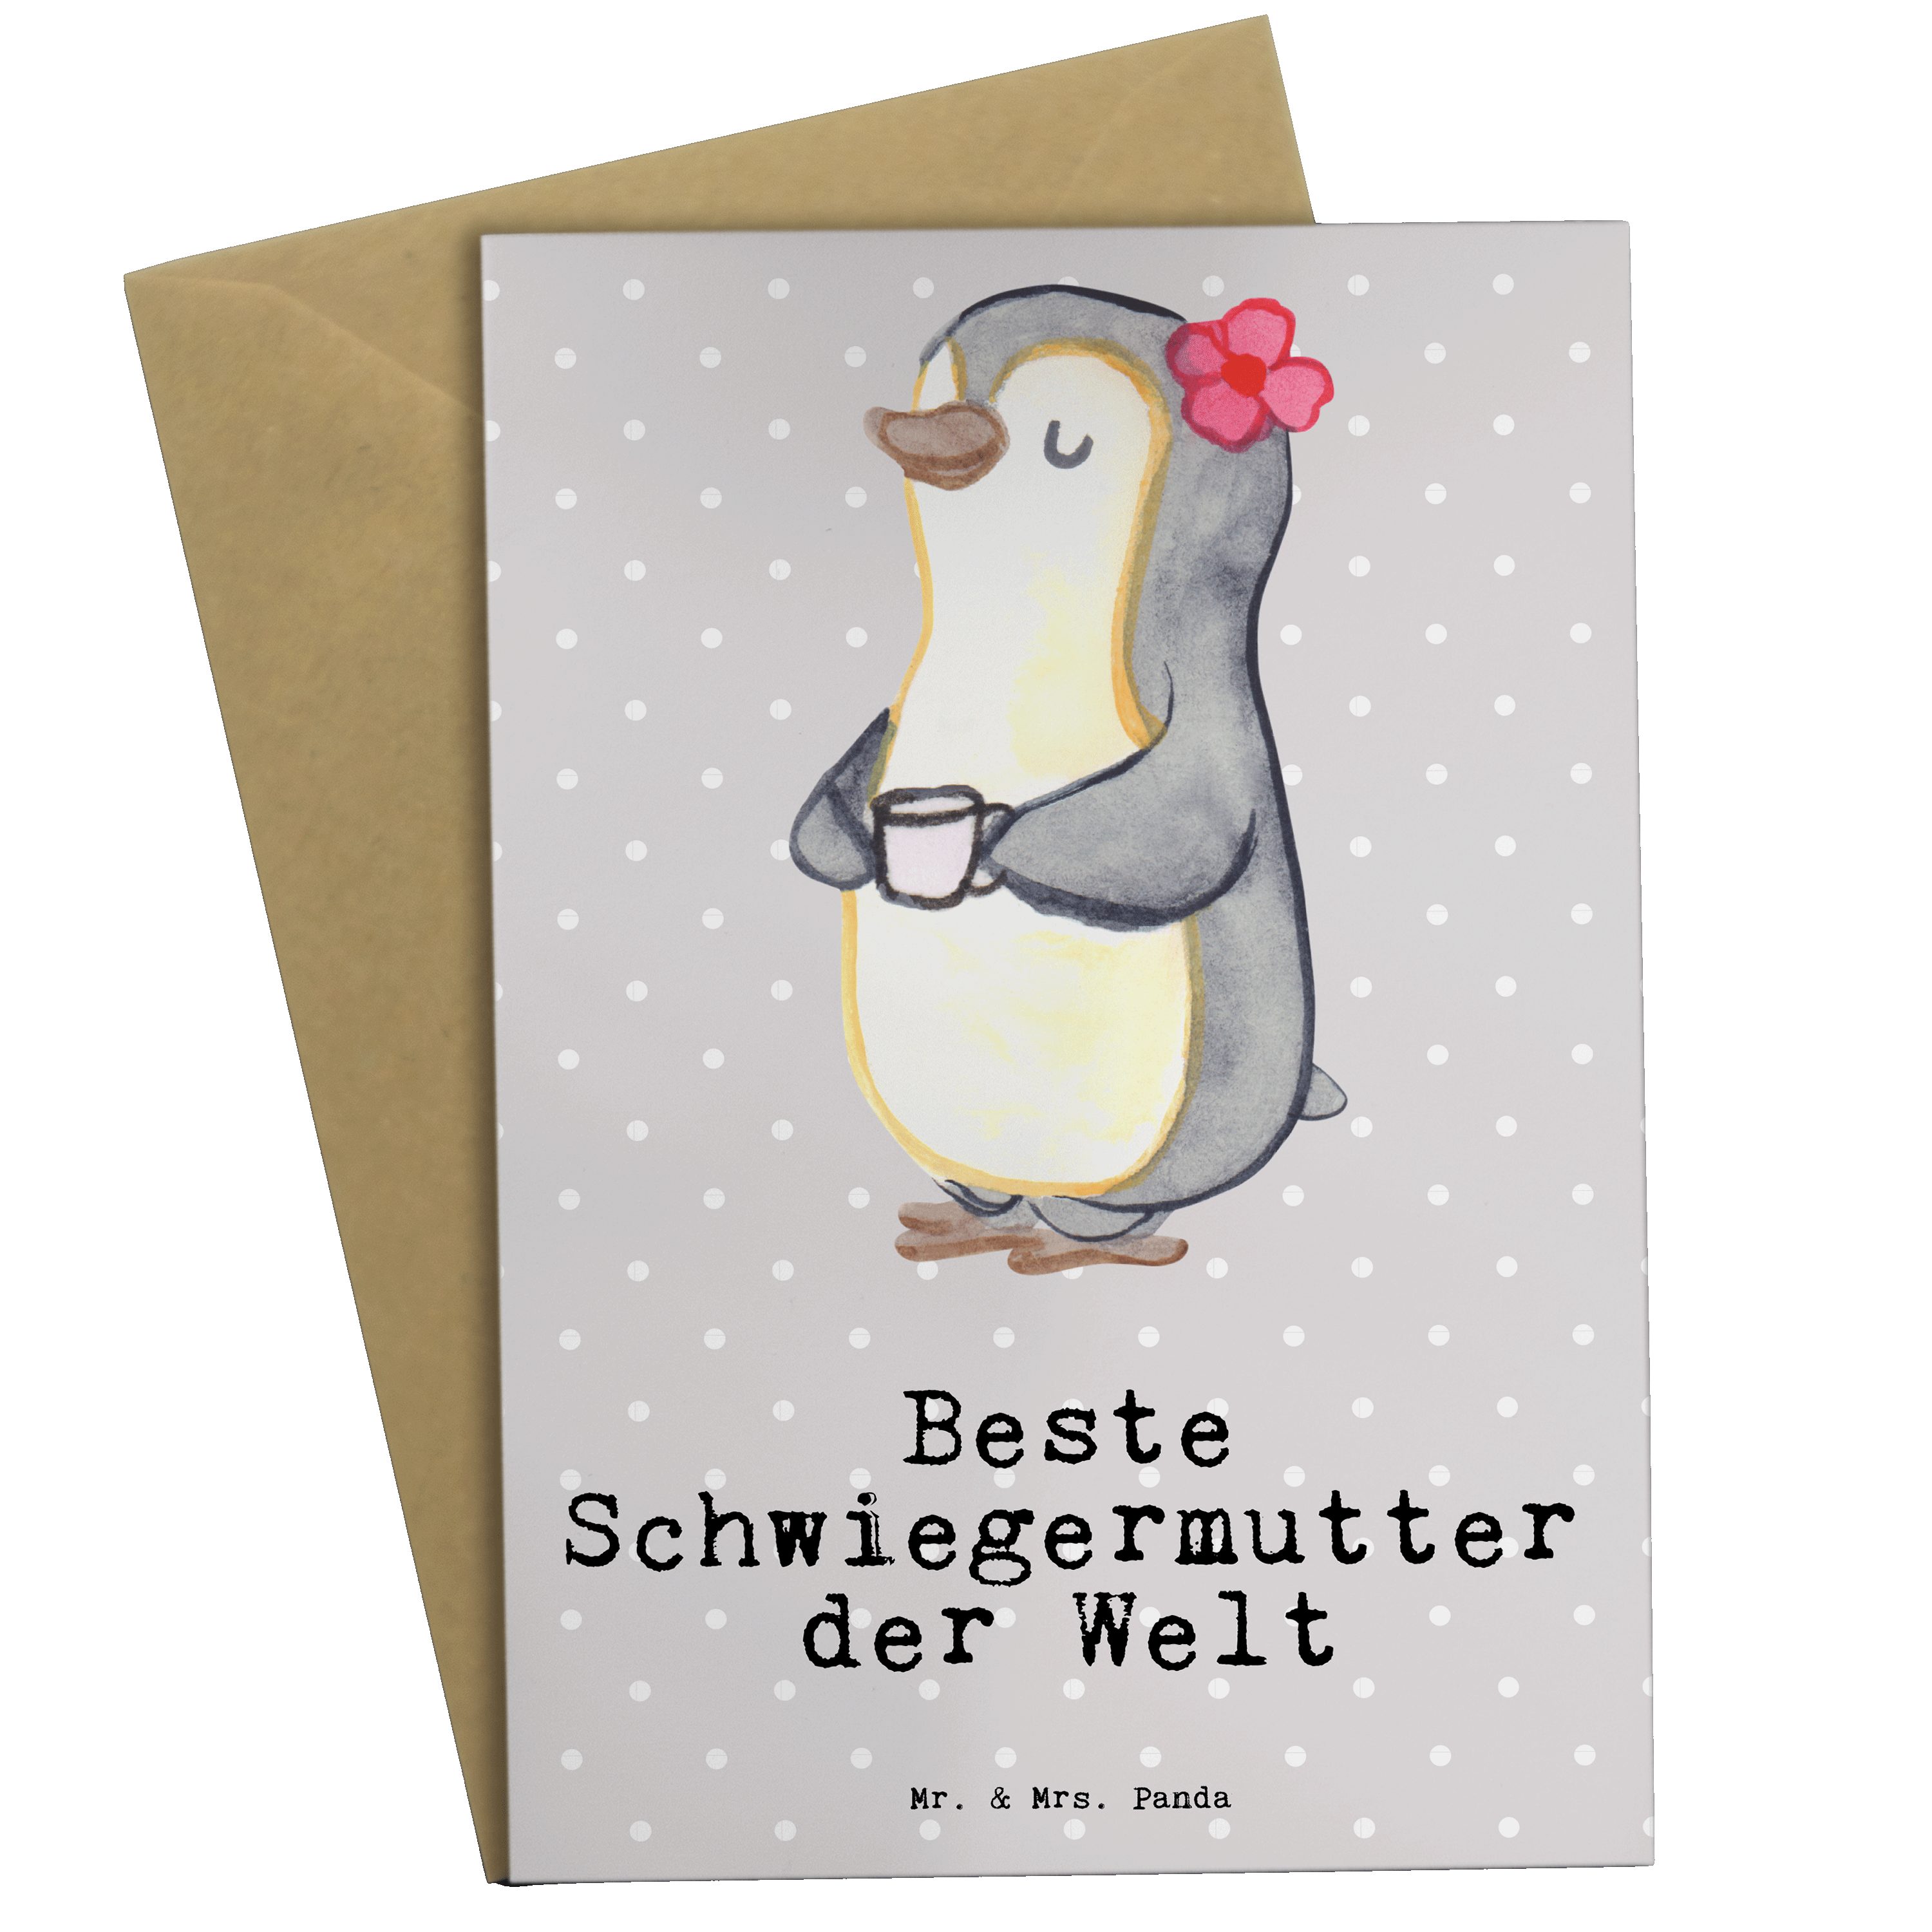 Panda Schwiegermutter Beste Mr. der Pinguin - Kla & Pastell Mrs. Geschenk, Grau Grußkarte - Welt